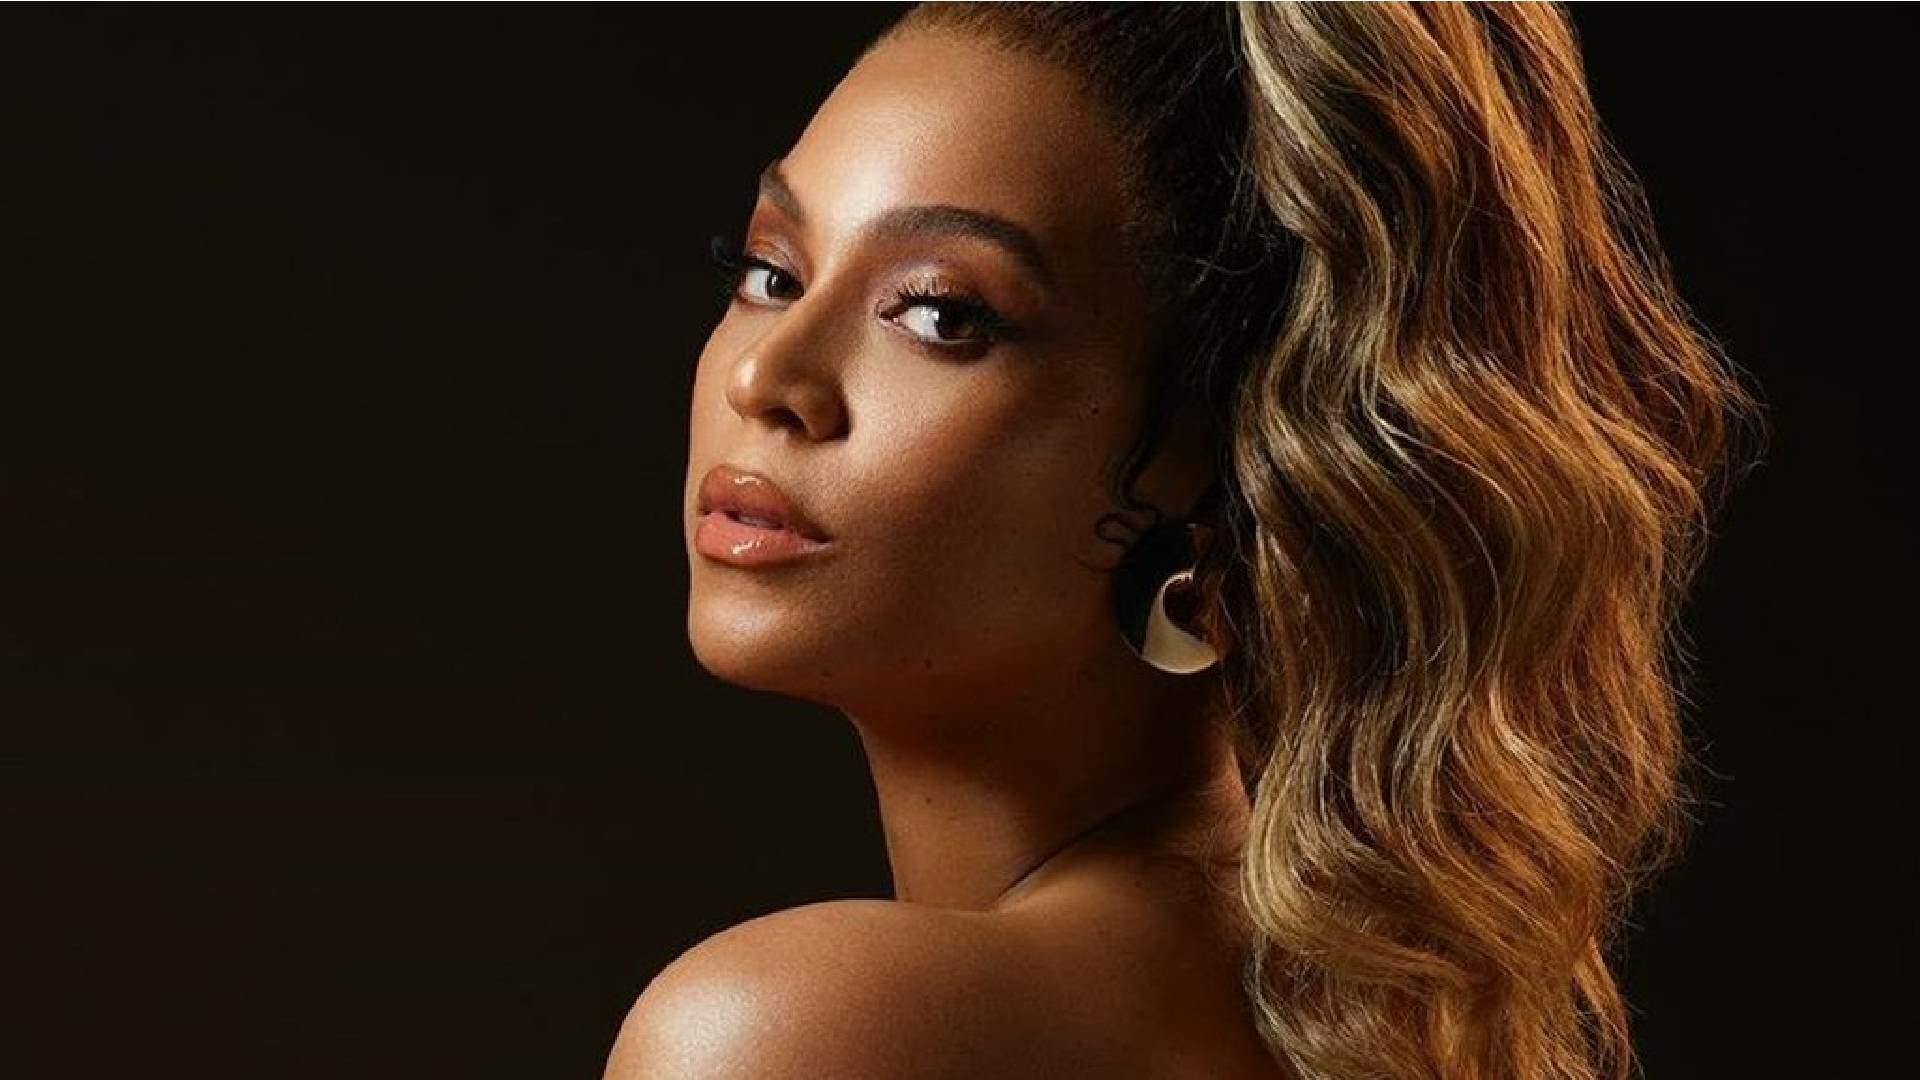 O que esperar do novo álbum de Beyoncé? Site expõe informações sigilosas e deixa fãs ansiosos - Metropolitana FM